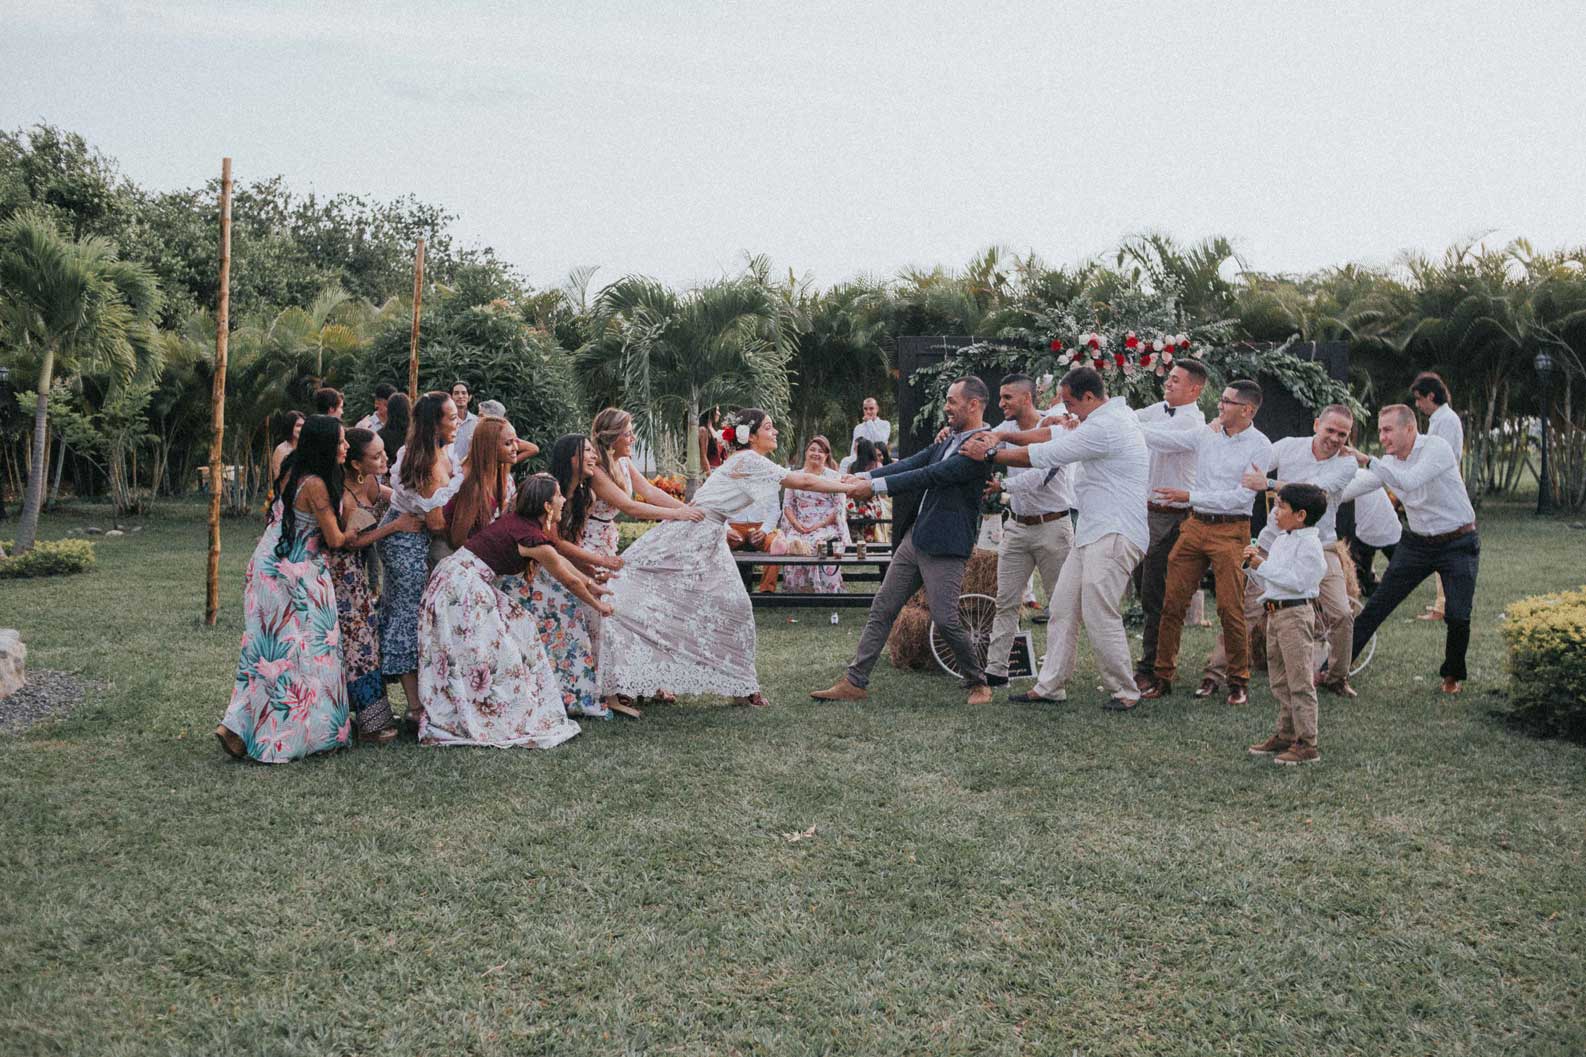 Sara y Karlos fotografos de boda profesionales en Cali Colombia. Cubrimos boda en todo Colombia y México, bodas simbólicas, Haciendas Las Vegas Cali, Bodas campestres, bodas campestres Cali, Bodas campestres Colombia, Ceremonia simbólica,